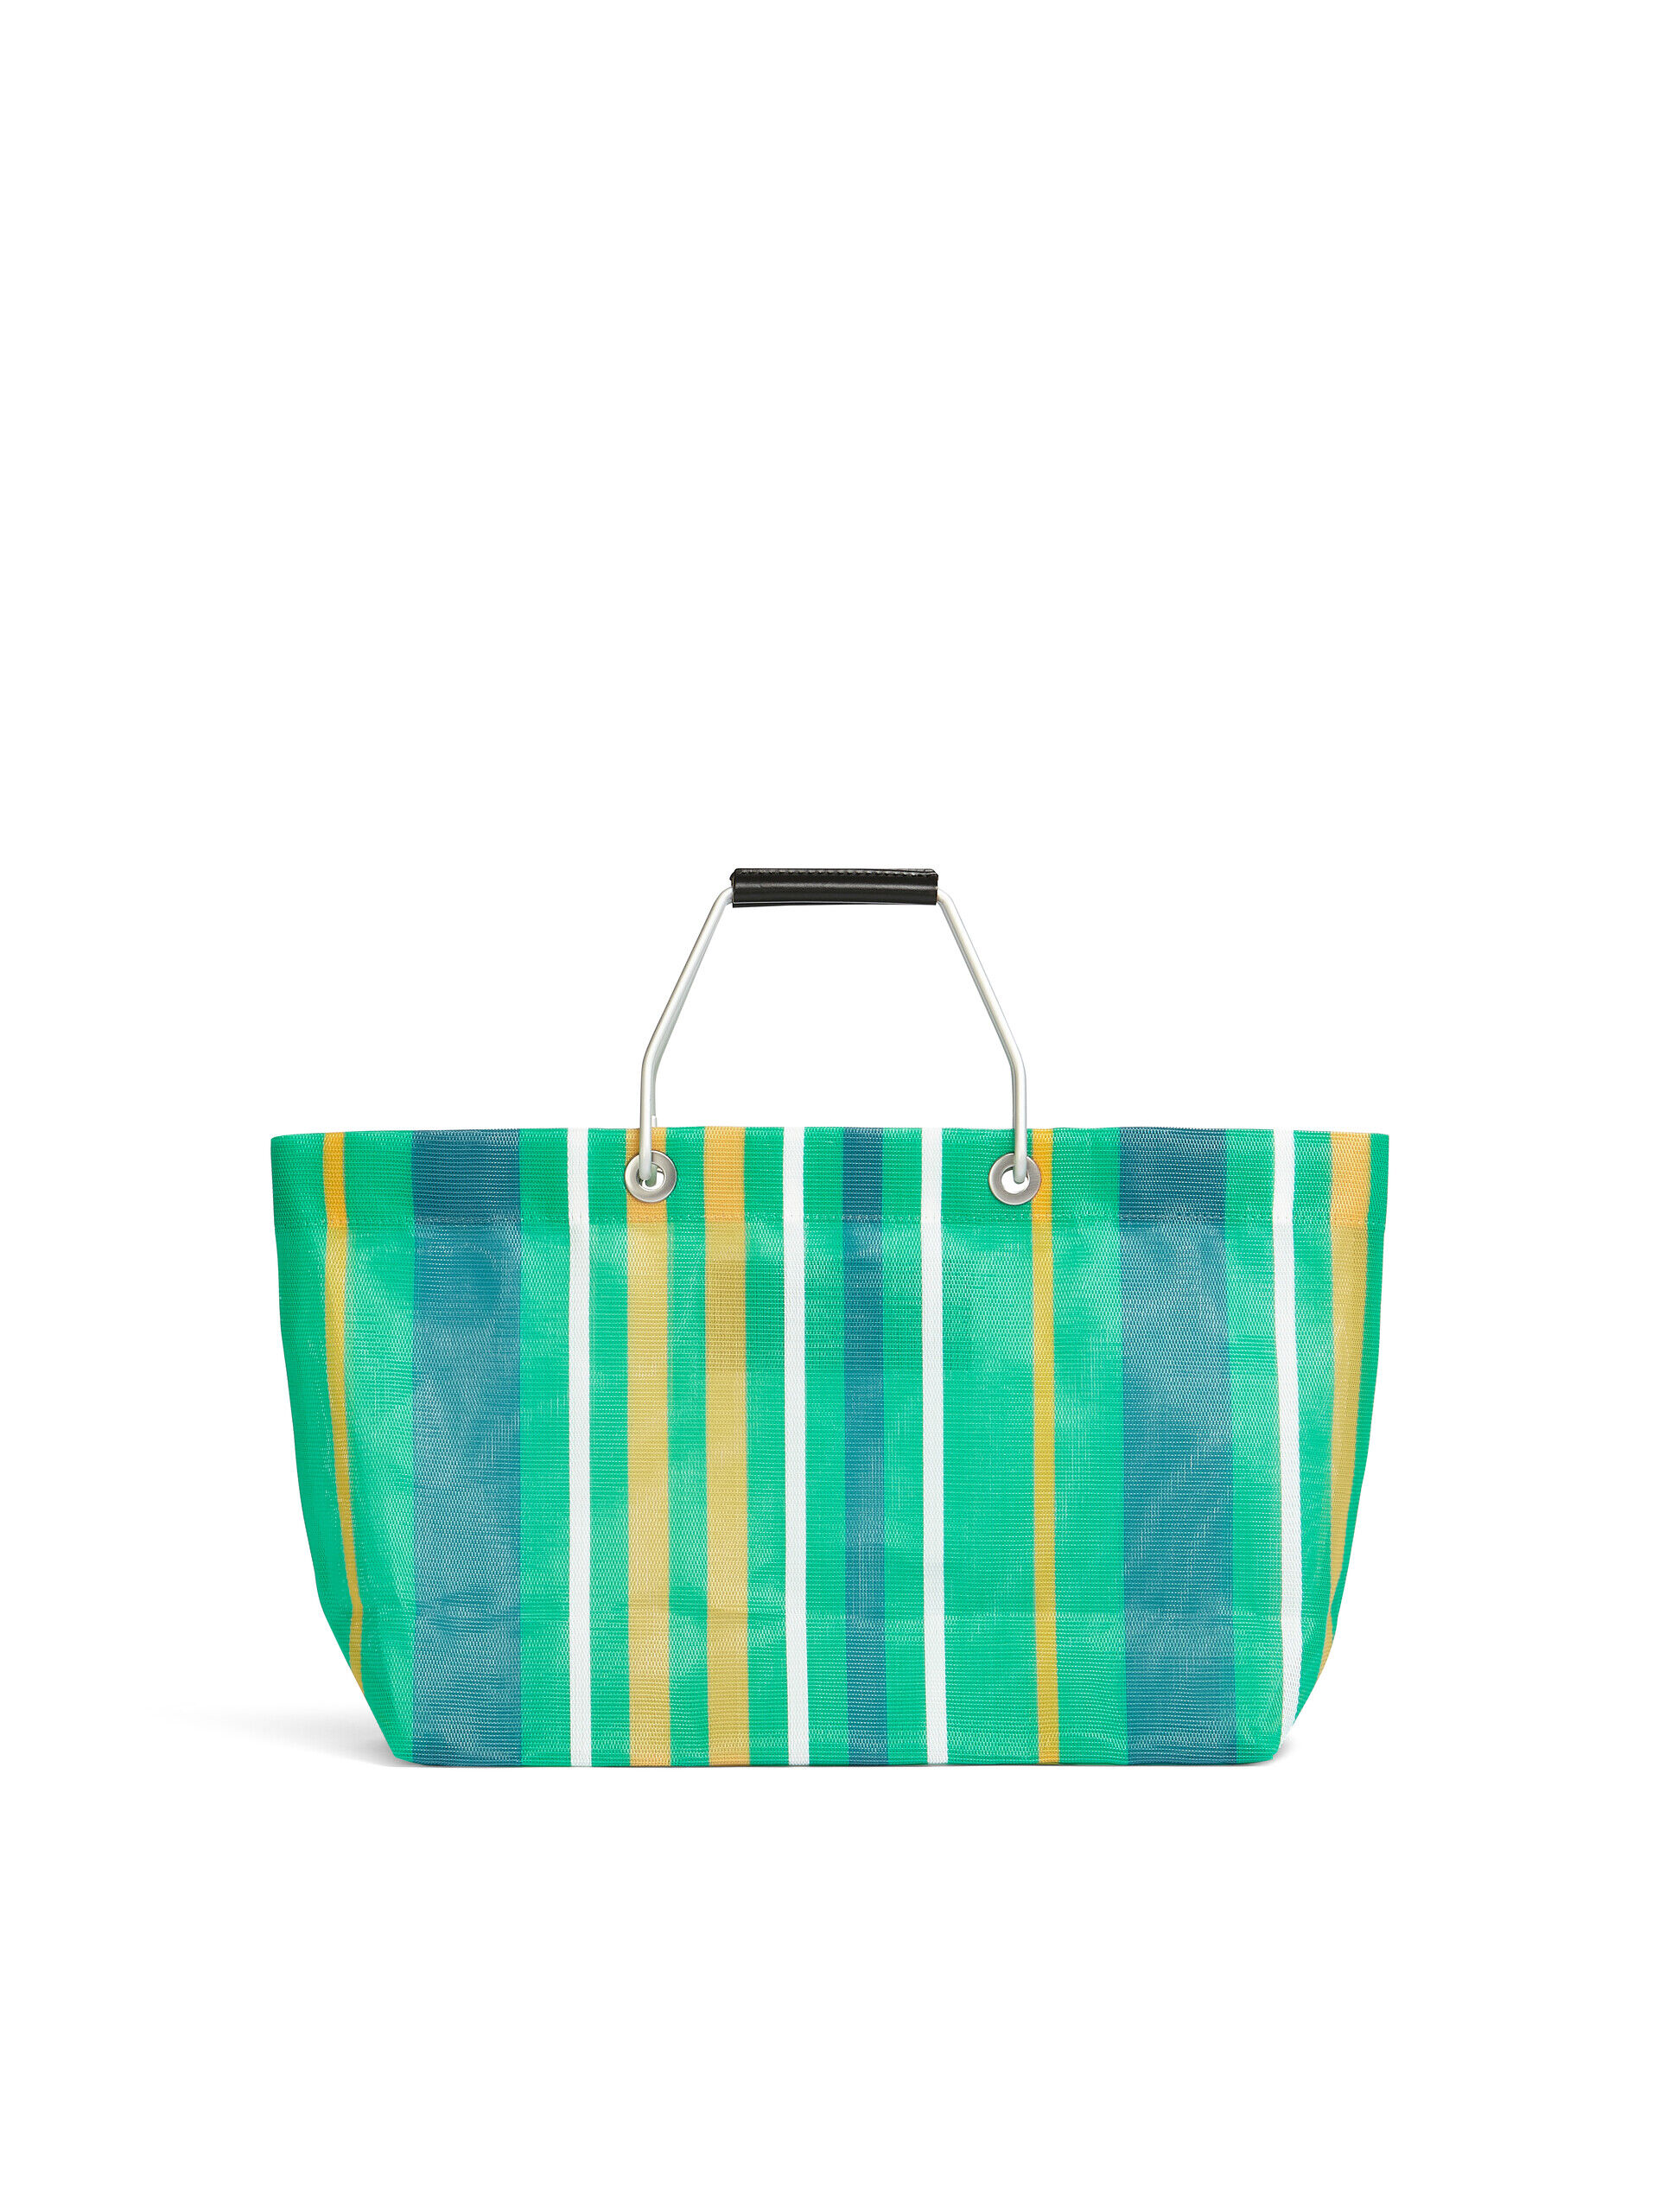 MARNI MARKET STRIPE MINI multicolor green bag | Marni